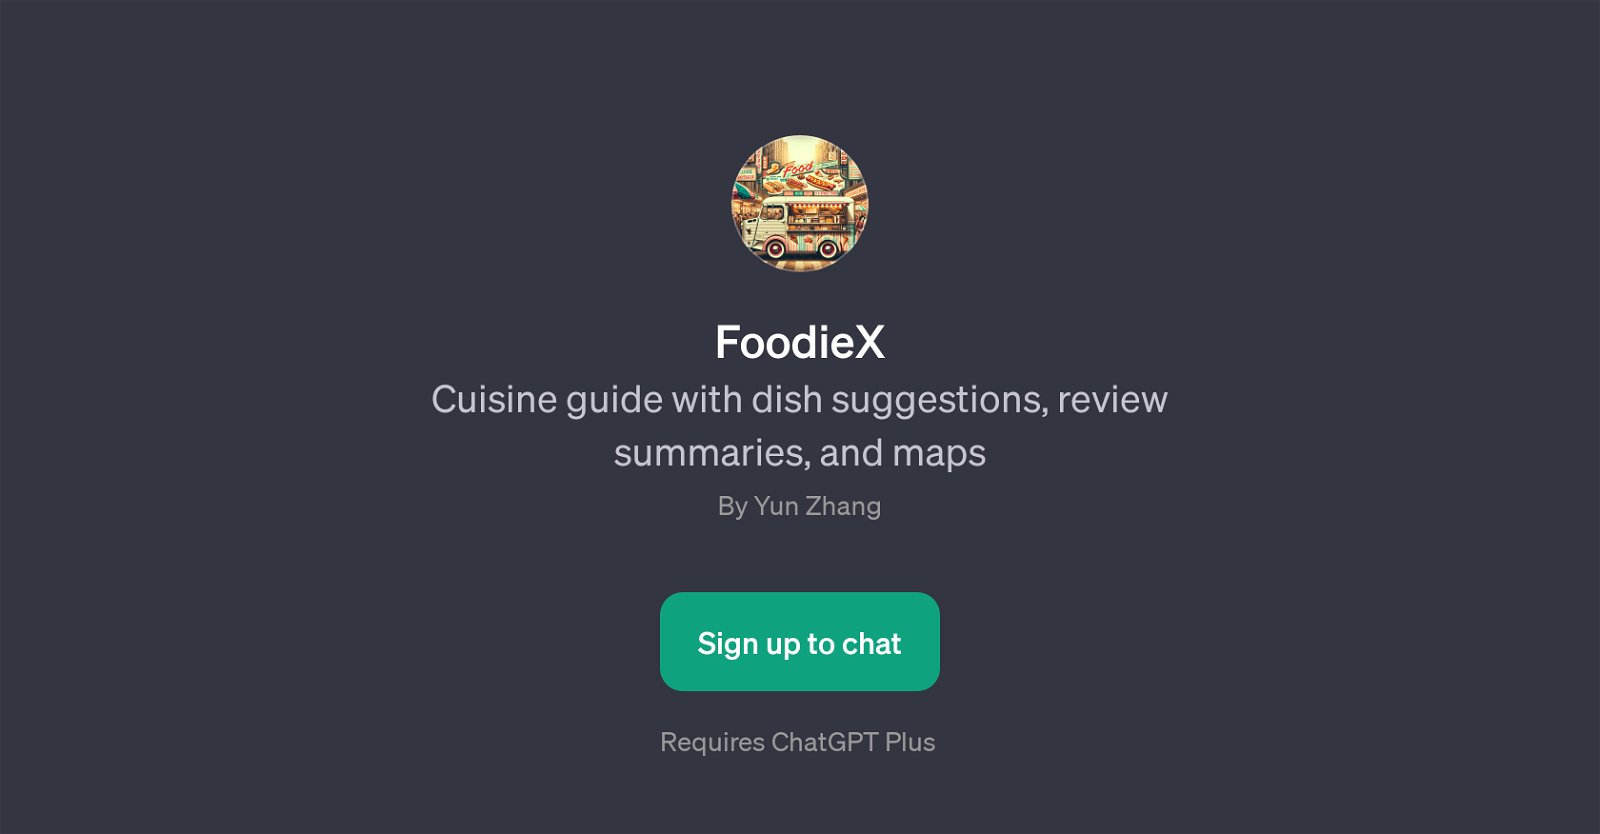 FoodieX website